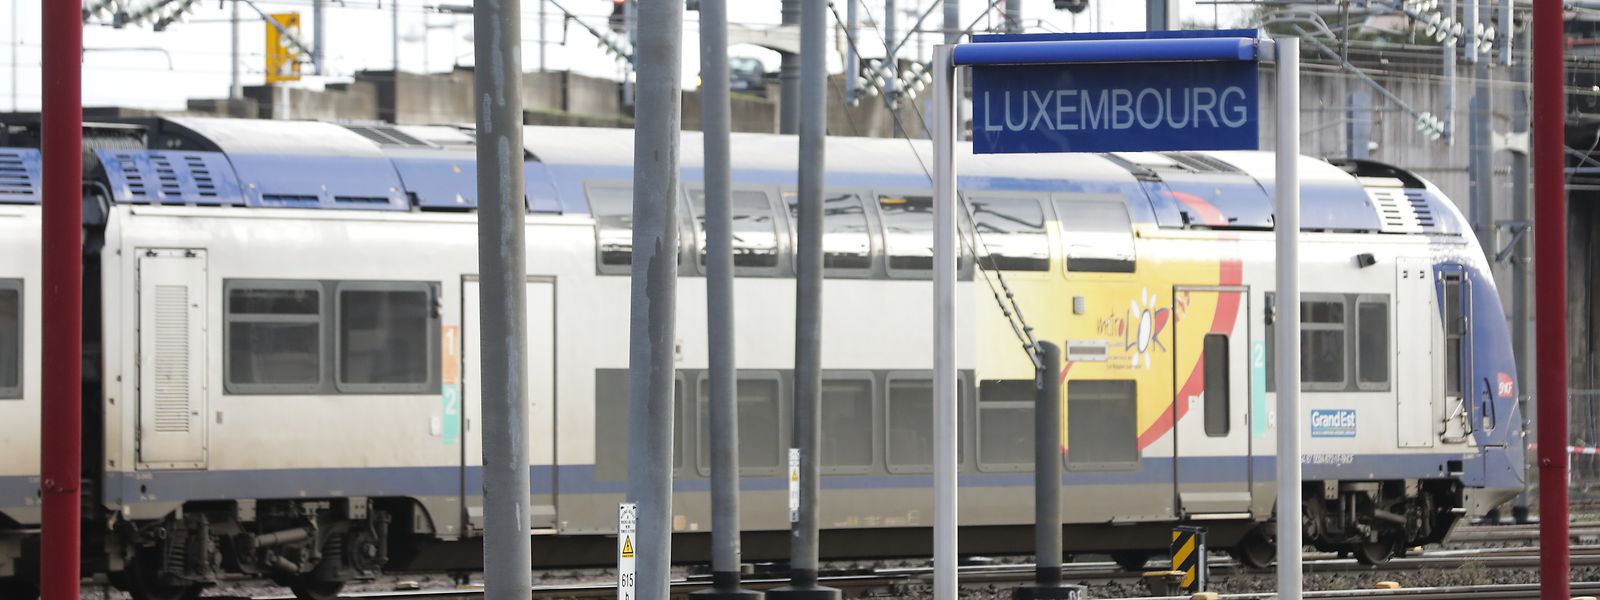 Ce samedi 18 mars, il n'y aura que huit trains, dans chaque sens de circulation, sur la ligne Metz-Luxembourg.